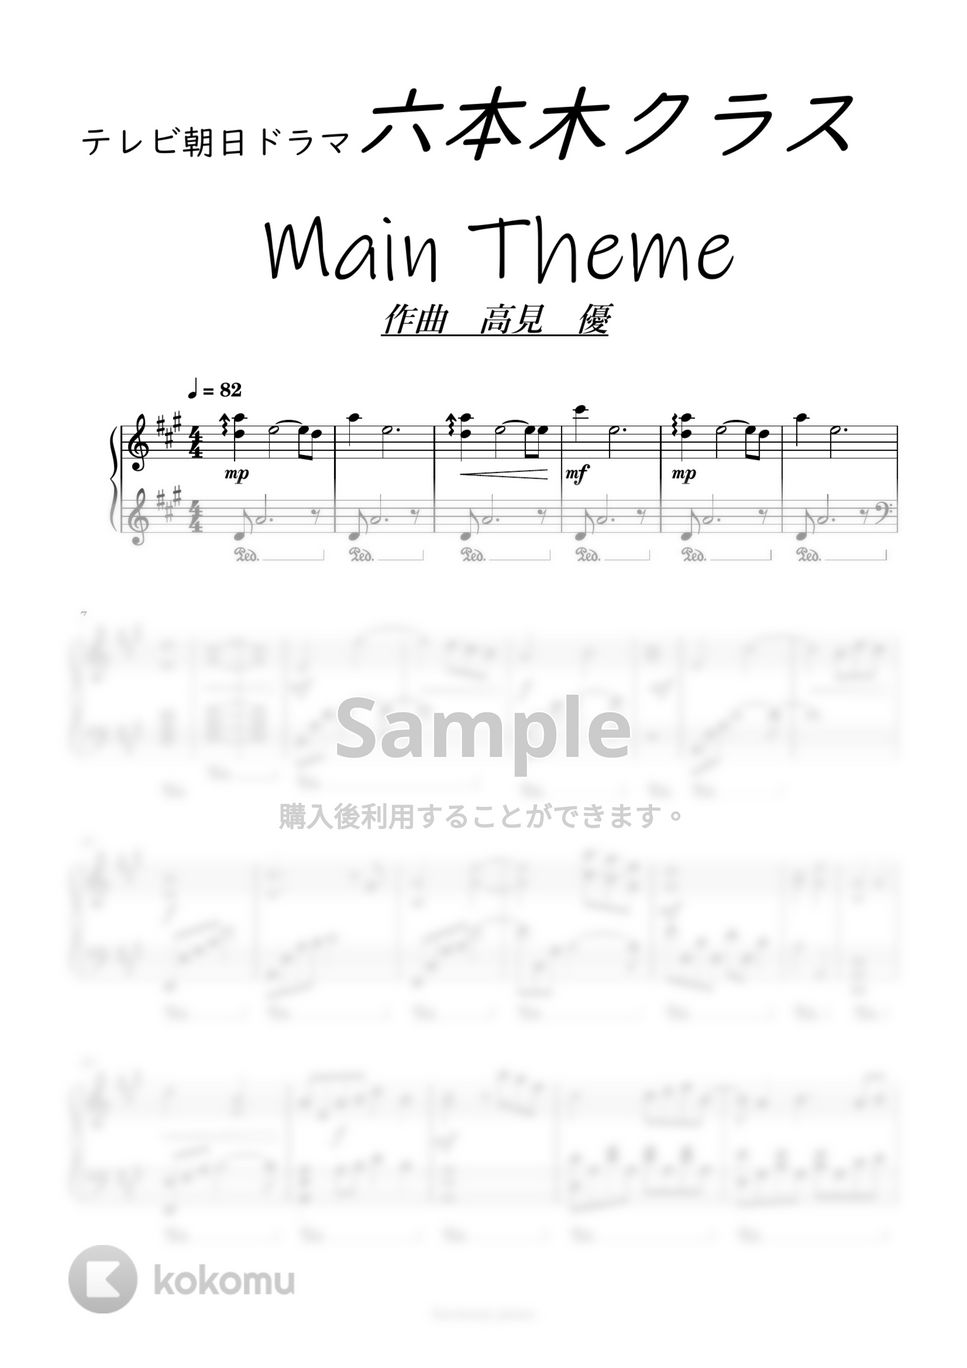 六本木クラス 竹内涼真主演ドラマ - サントラBGM by harmony piano